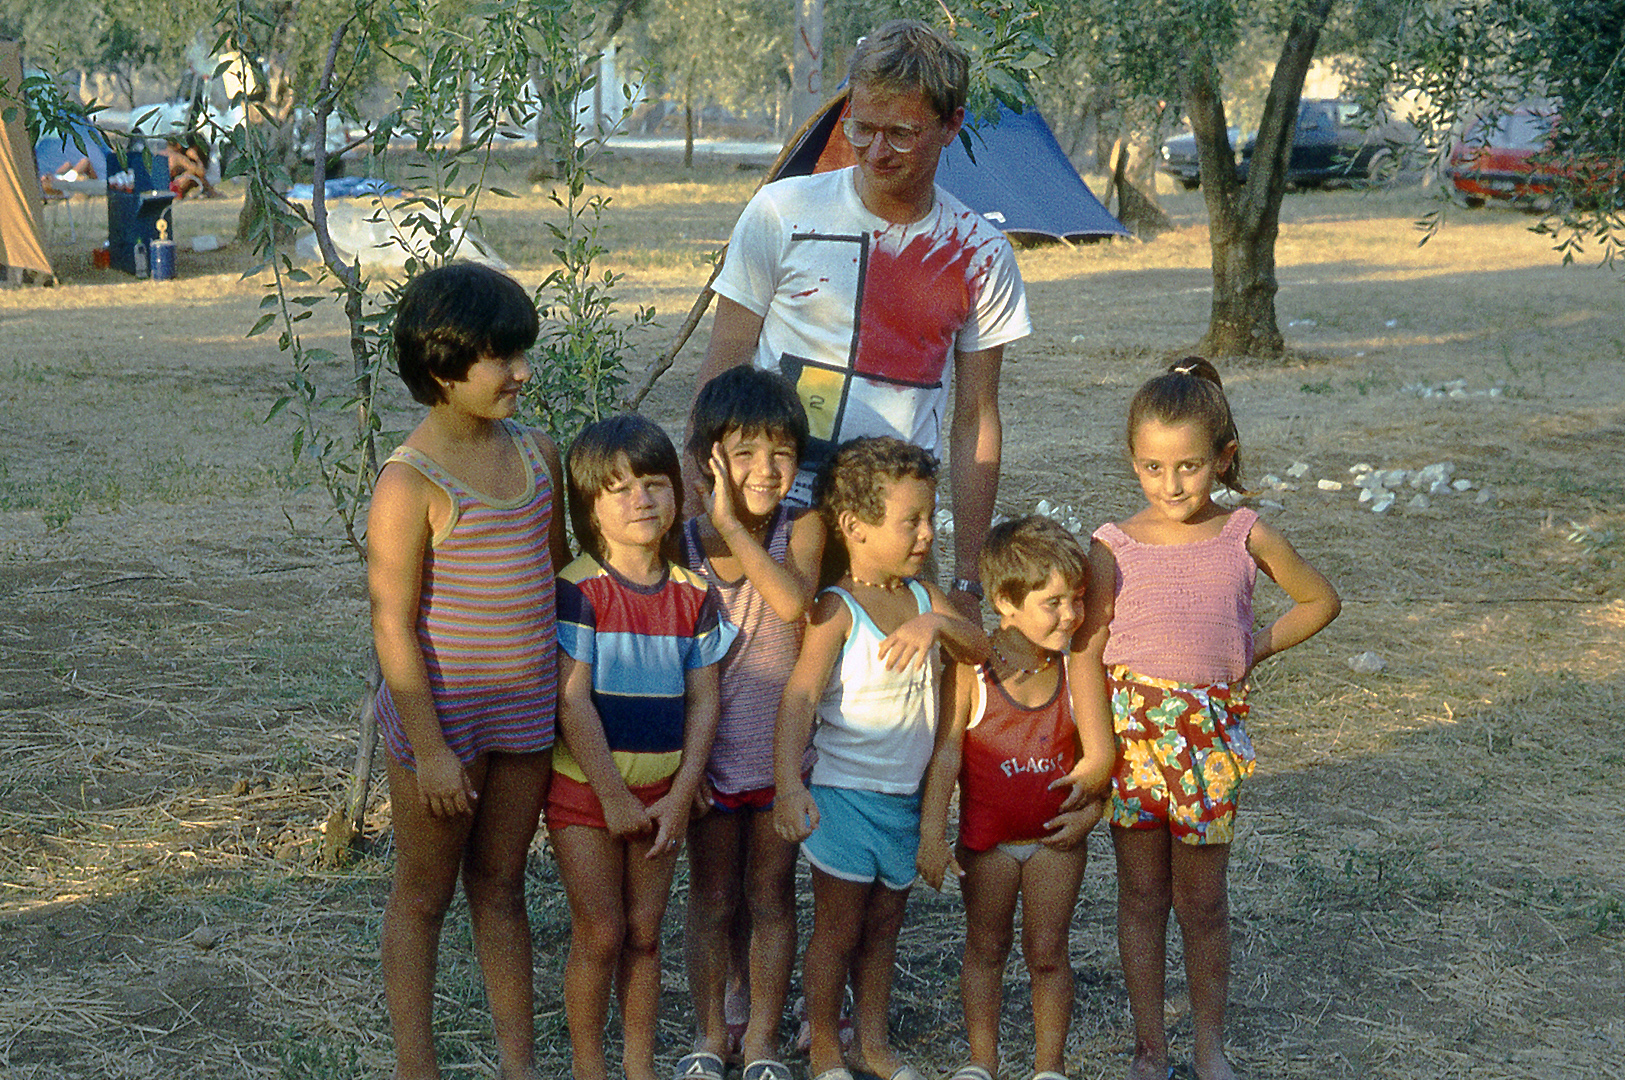 Tussen de kinderen (Apulië, Italië); Between the children (Apulia, Italy)